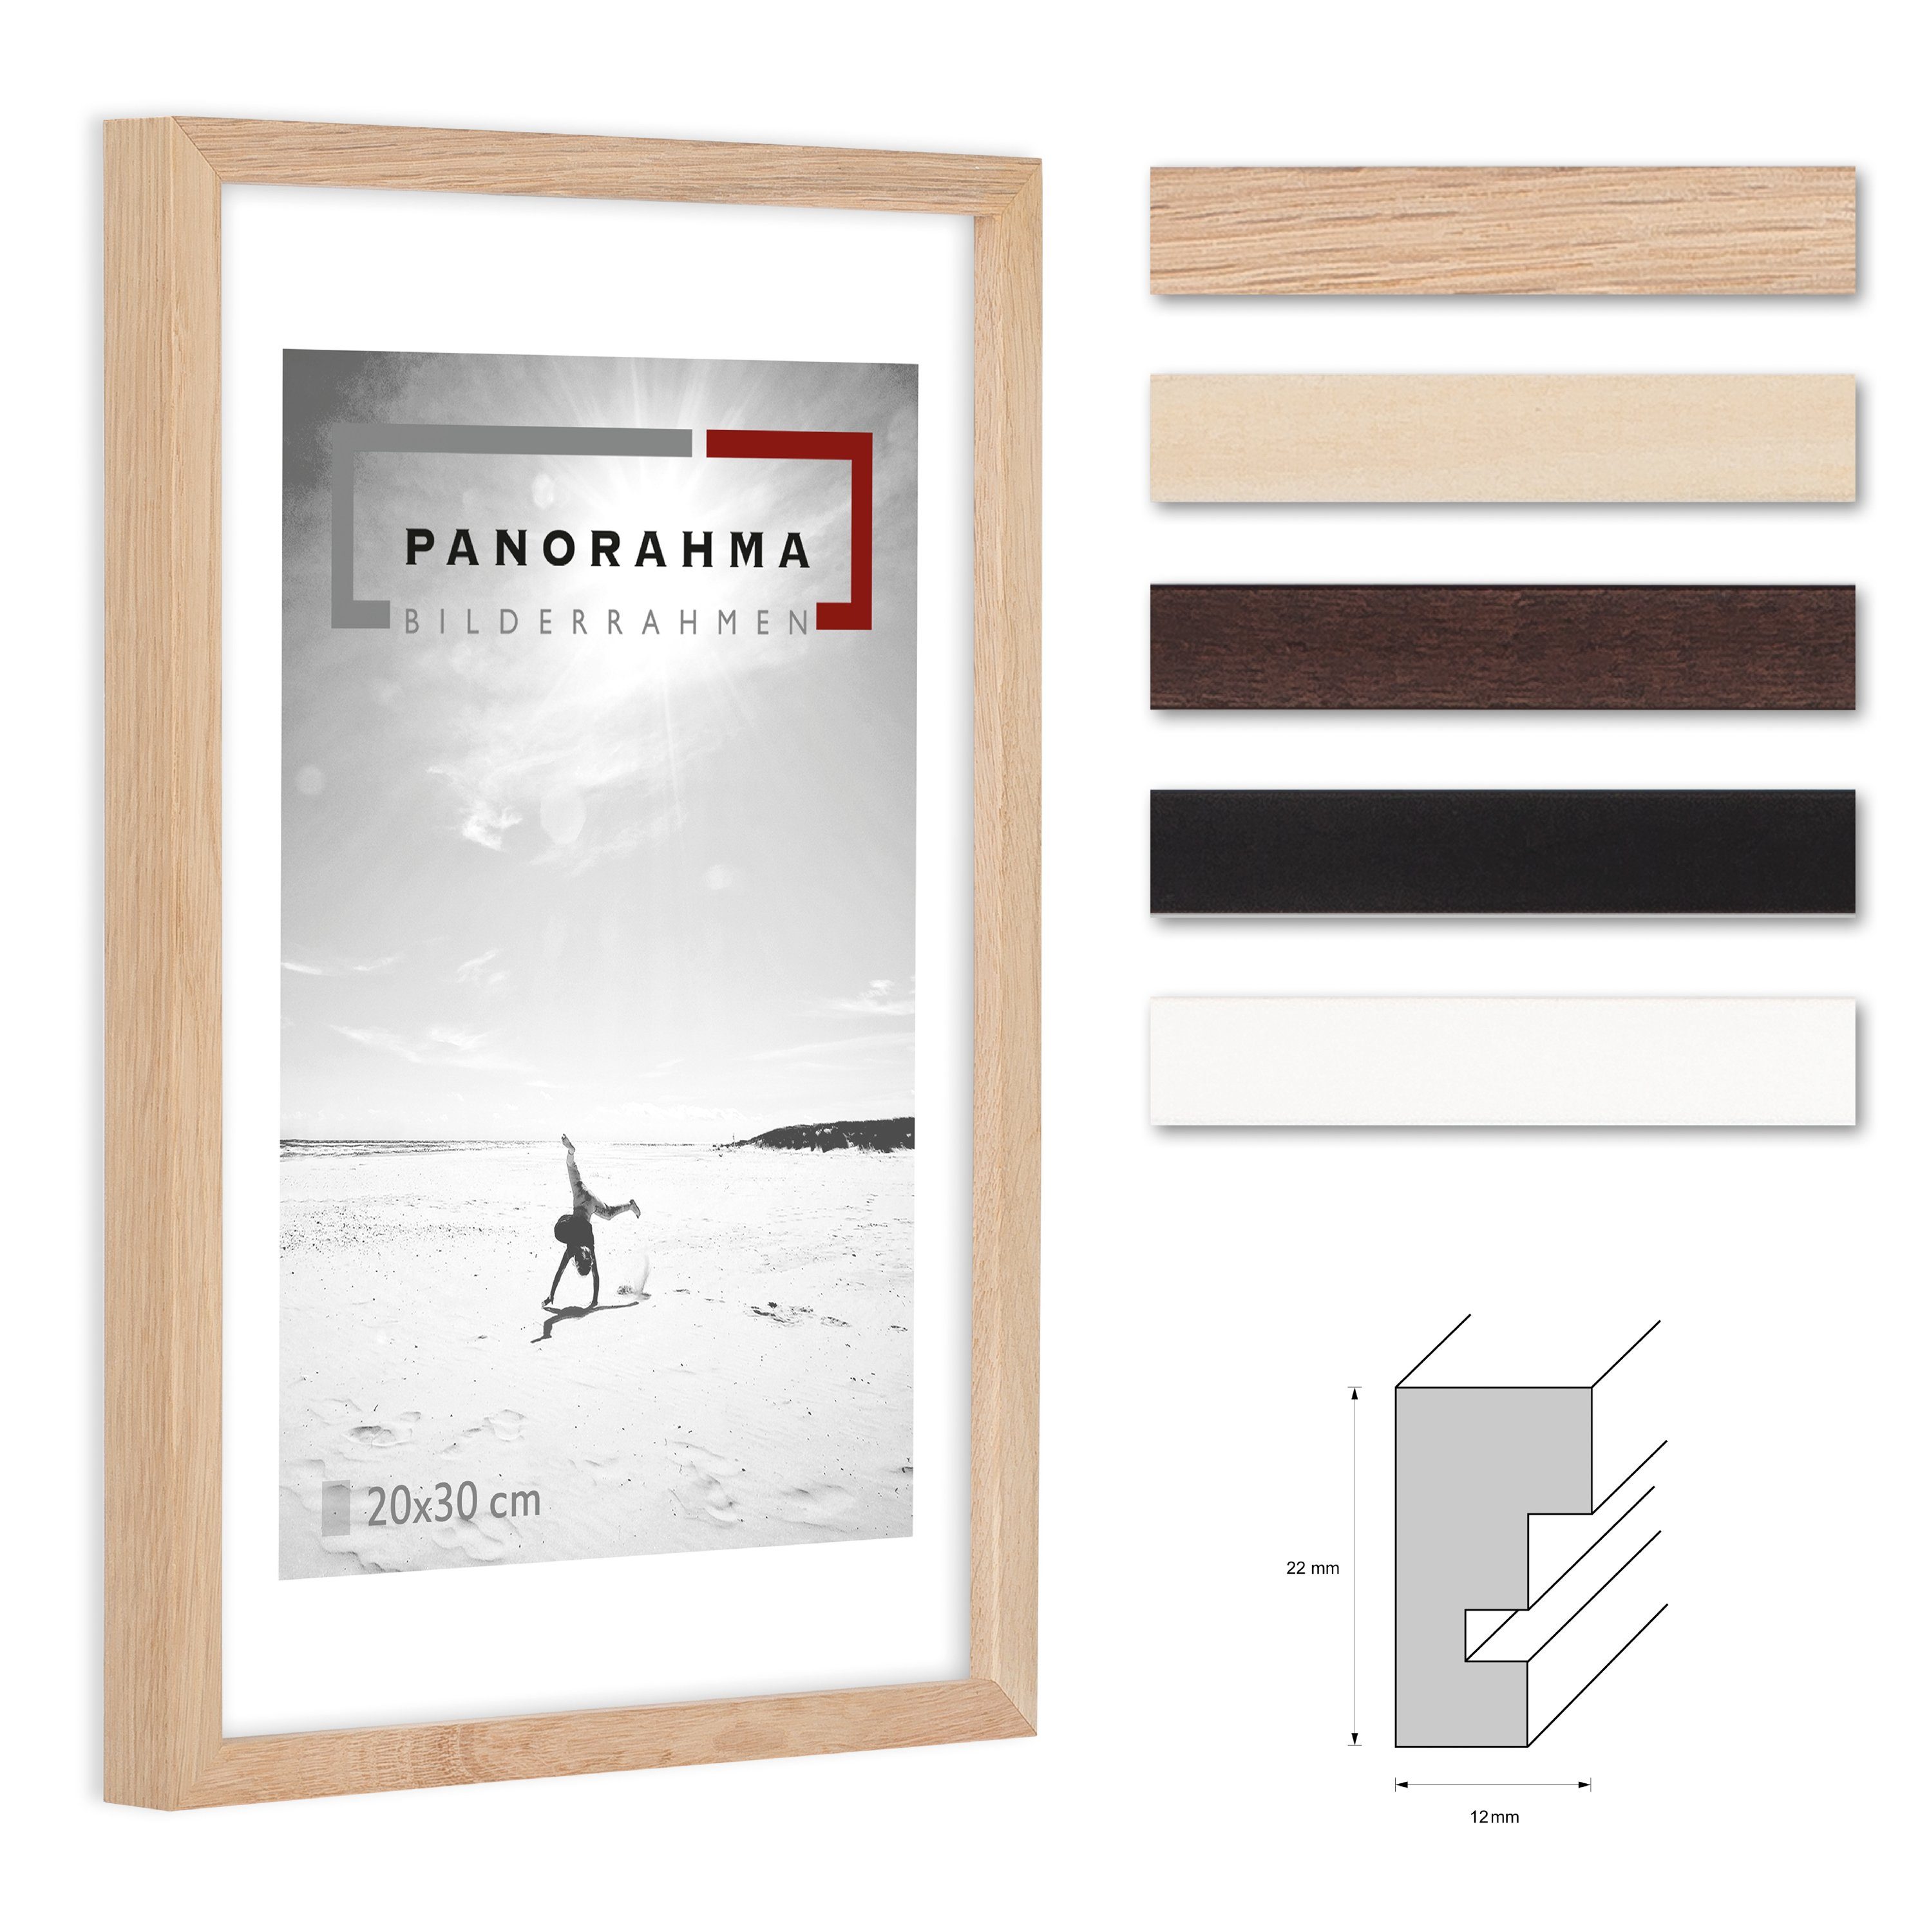 Panorahma Bilderrahmen Holz Bilderrahmen modern in fünf verschiedenen Farben mit Normalglas, für 1 Bilder, 1 Rahmen, Fotorahmen, echtes Glas Eiche Natur